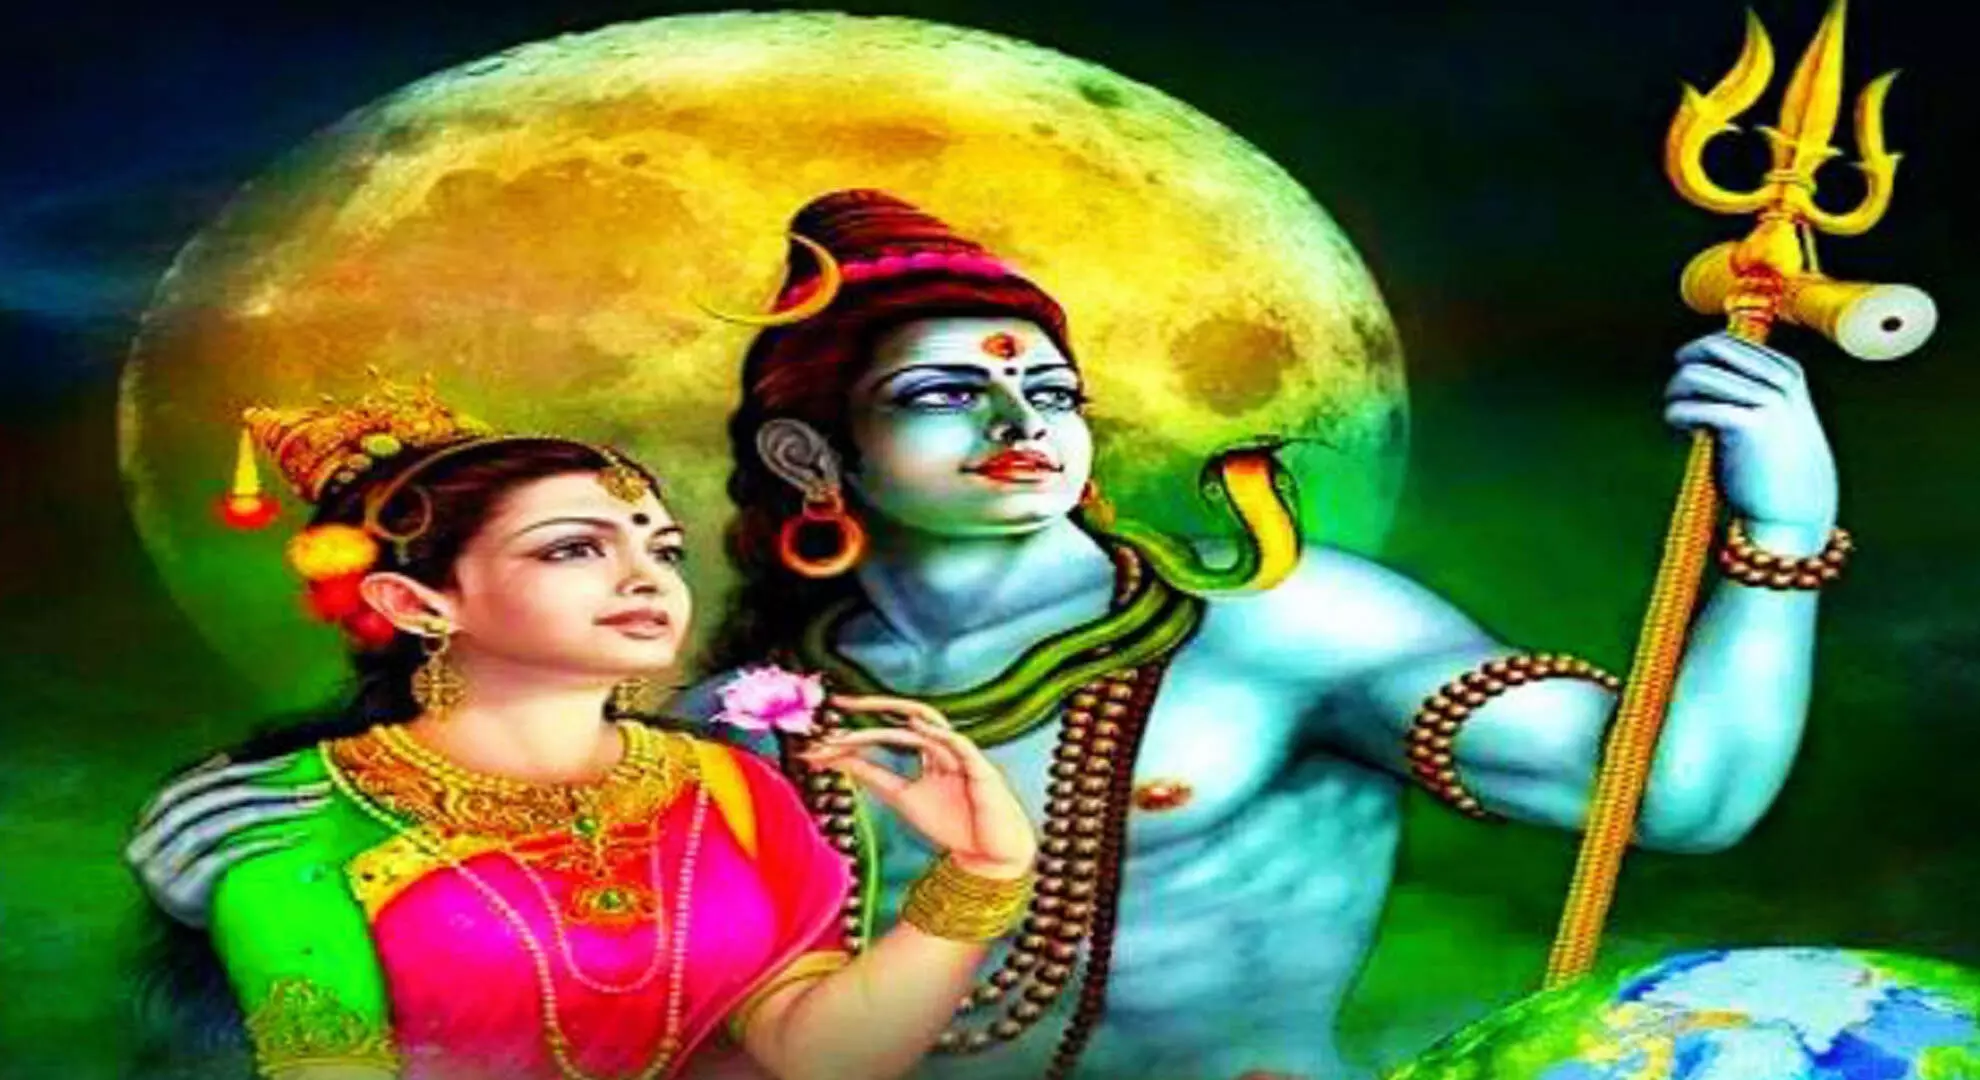 भगवान शिव और माता पार्वती से सीखी ये पांच बातें, जीवन बना रहेगा सदा सुखी